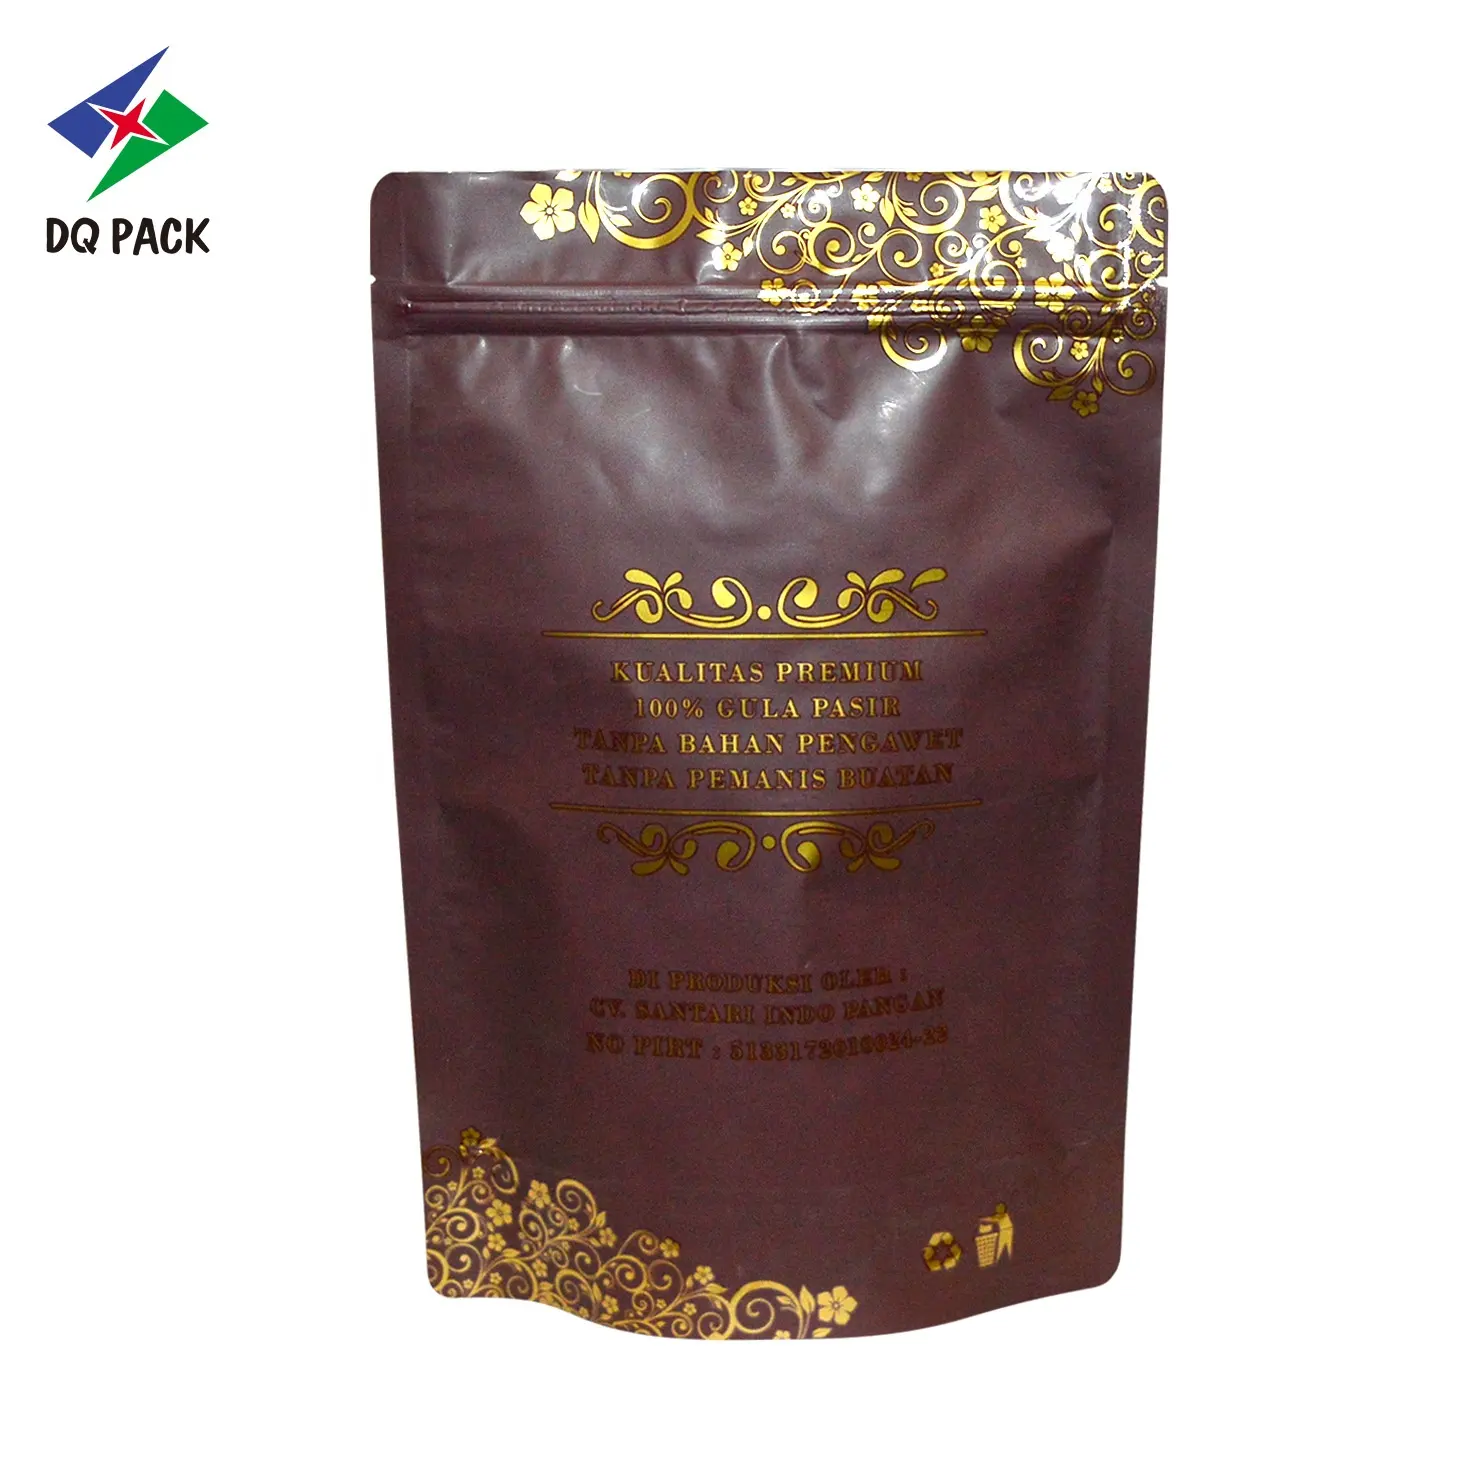 DQ PACK pochette refermable à fermeture éclair ziplock sac café poudre sac d'emballage alimentaire